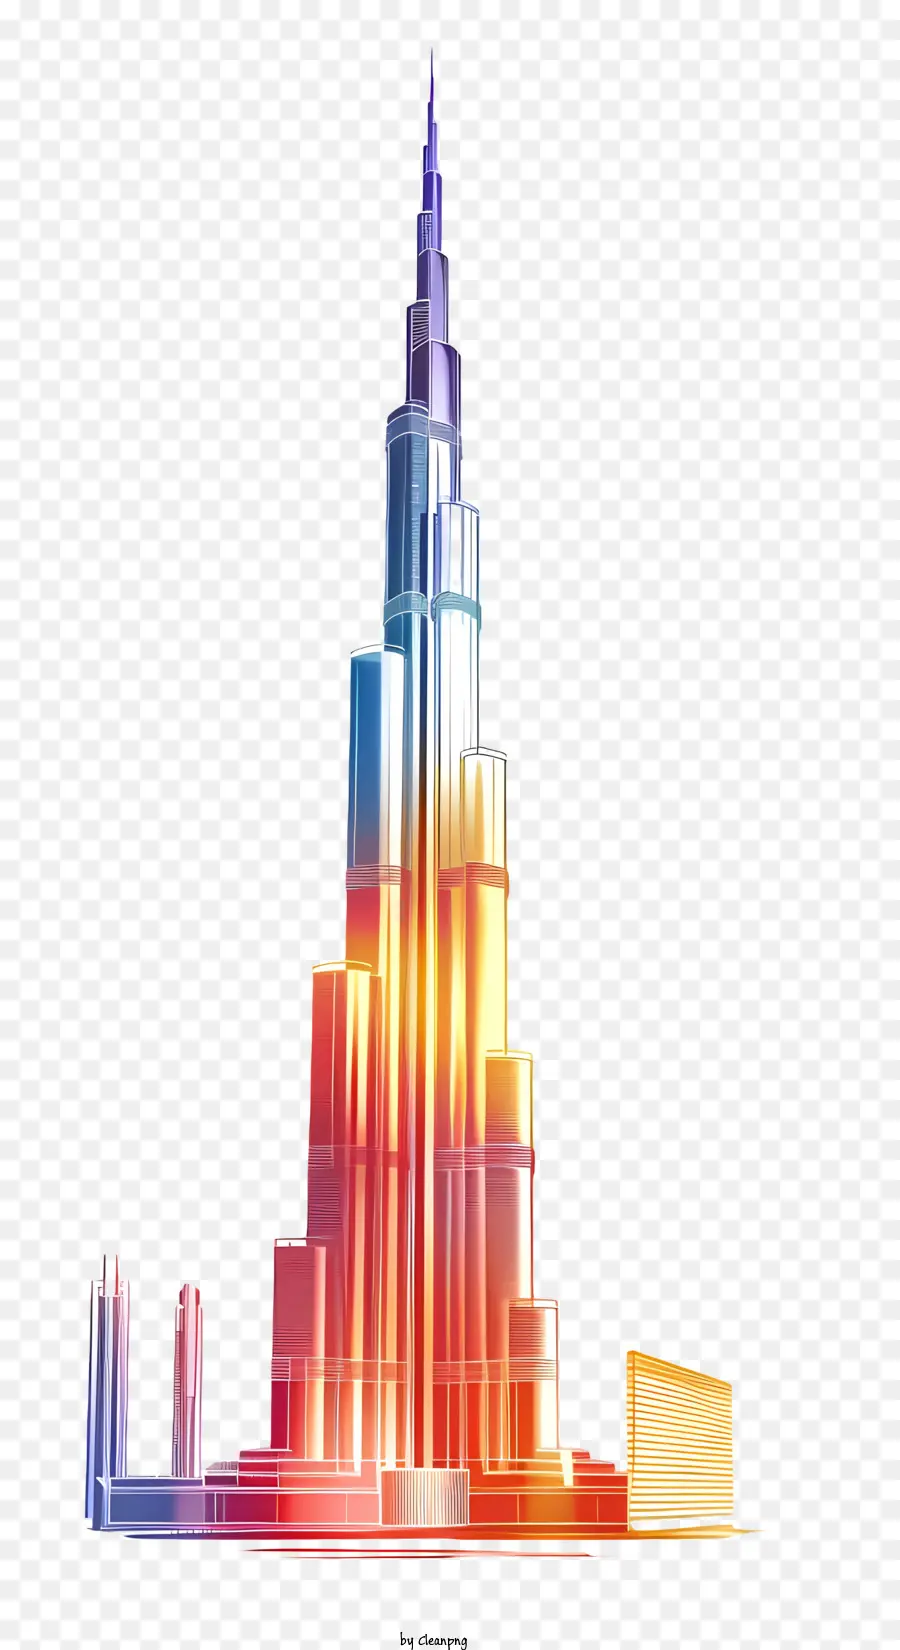 Burj Khalifa Burj Khalifa Höchstes Gebäude der Weltmetallstrukturuhr oben - Lebendige, moderne Skyline der Stadt mit höchstem Gebäude